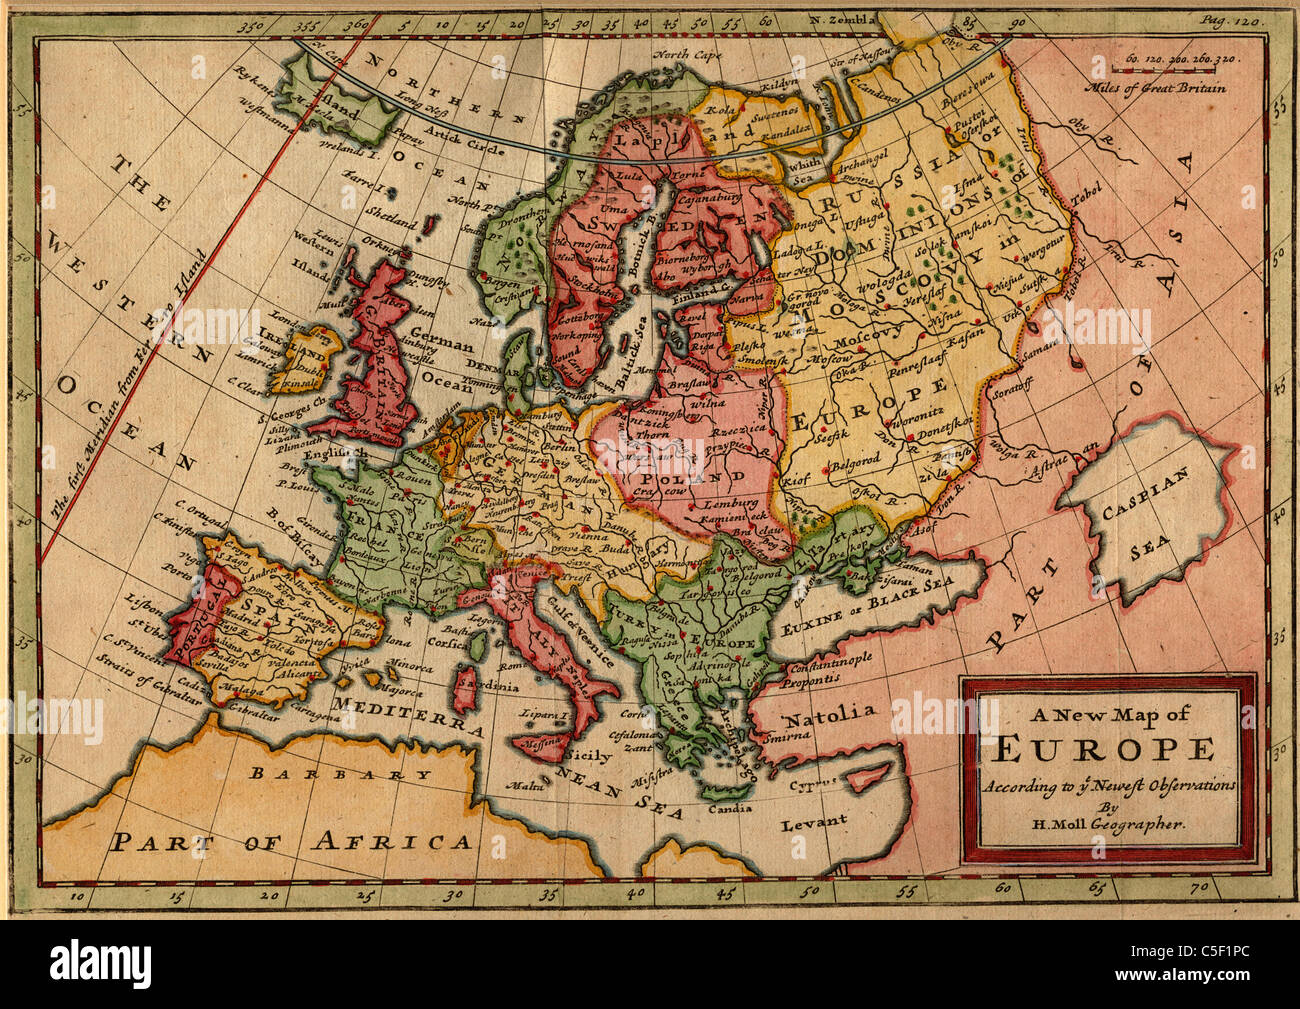 Mappa antiquario dell'Europa: "Una nuova mappa di Europa secondo le più recenti osservazioni da H. Moll geografo" (1721) - Herman Moll Foto Stock